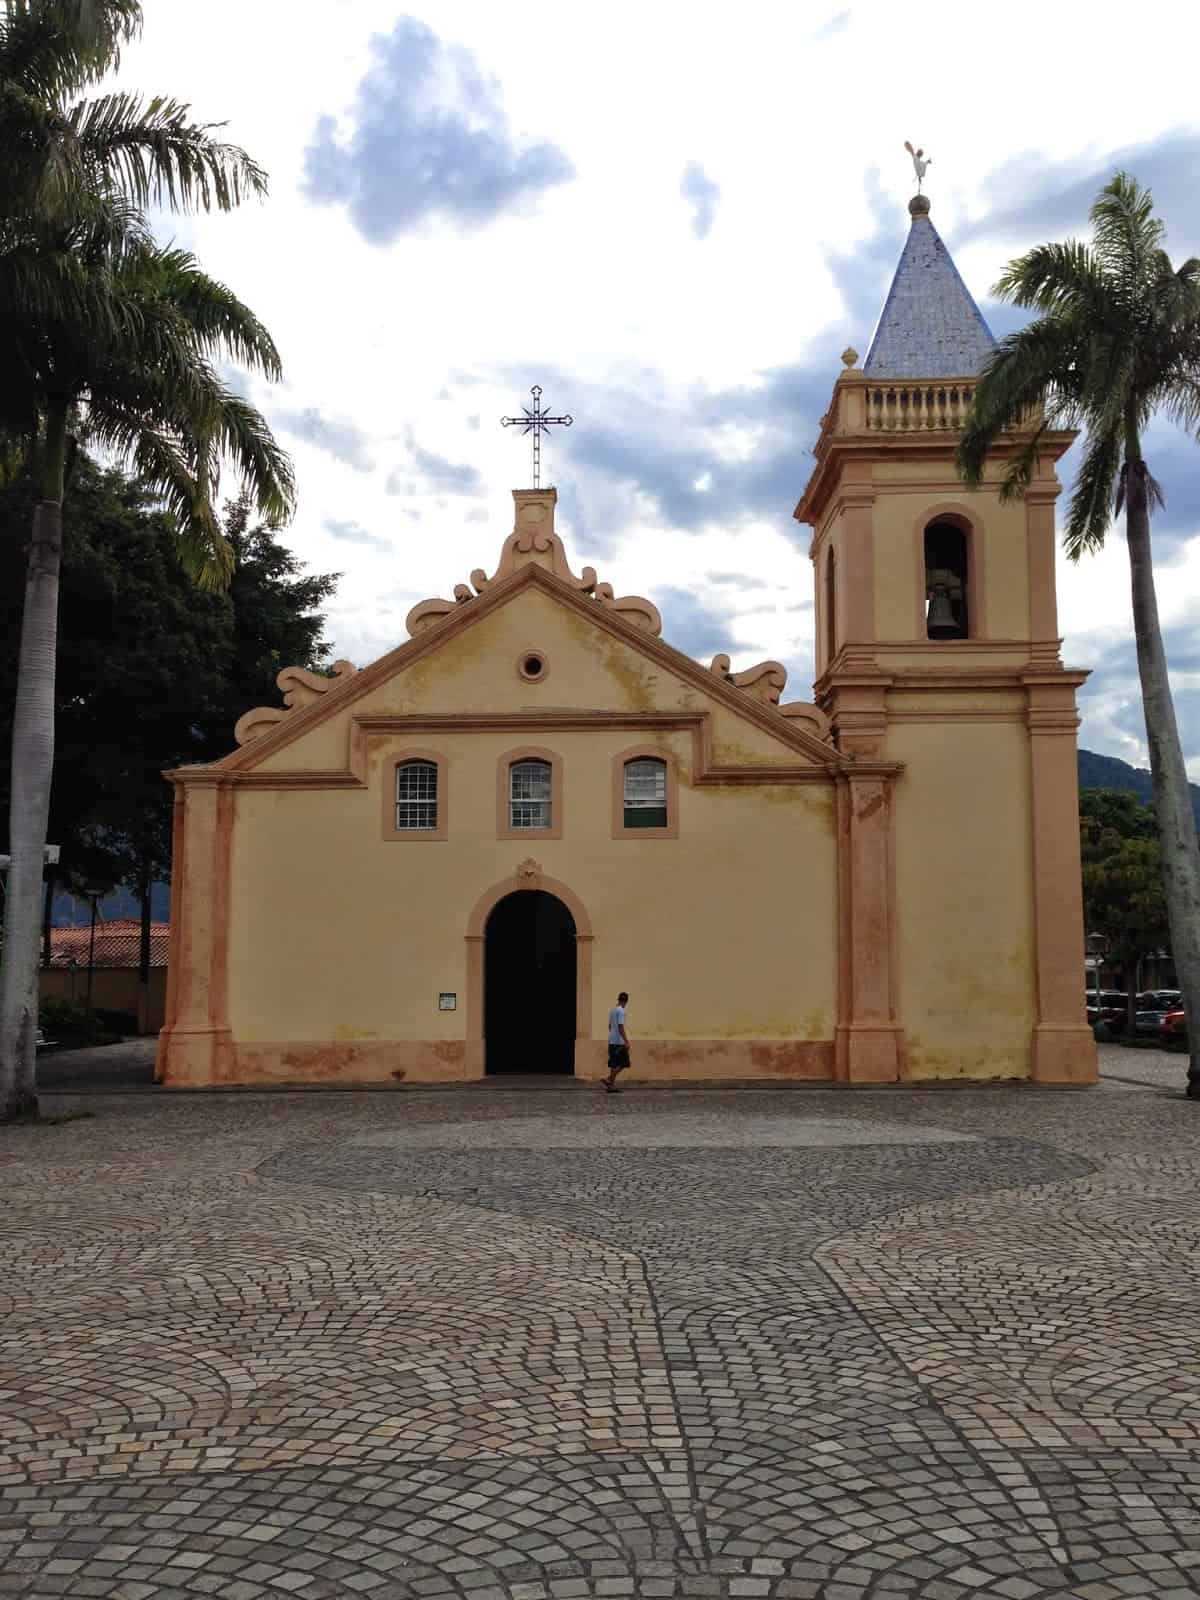 Igreja Matriz in São Sebastião, Brazil